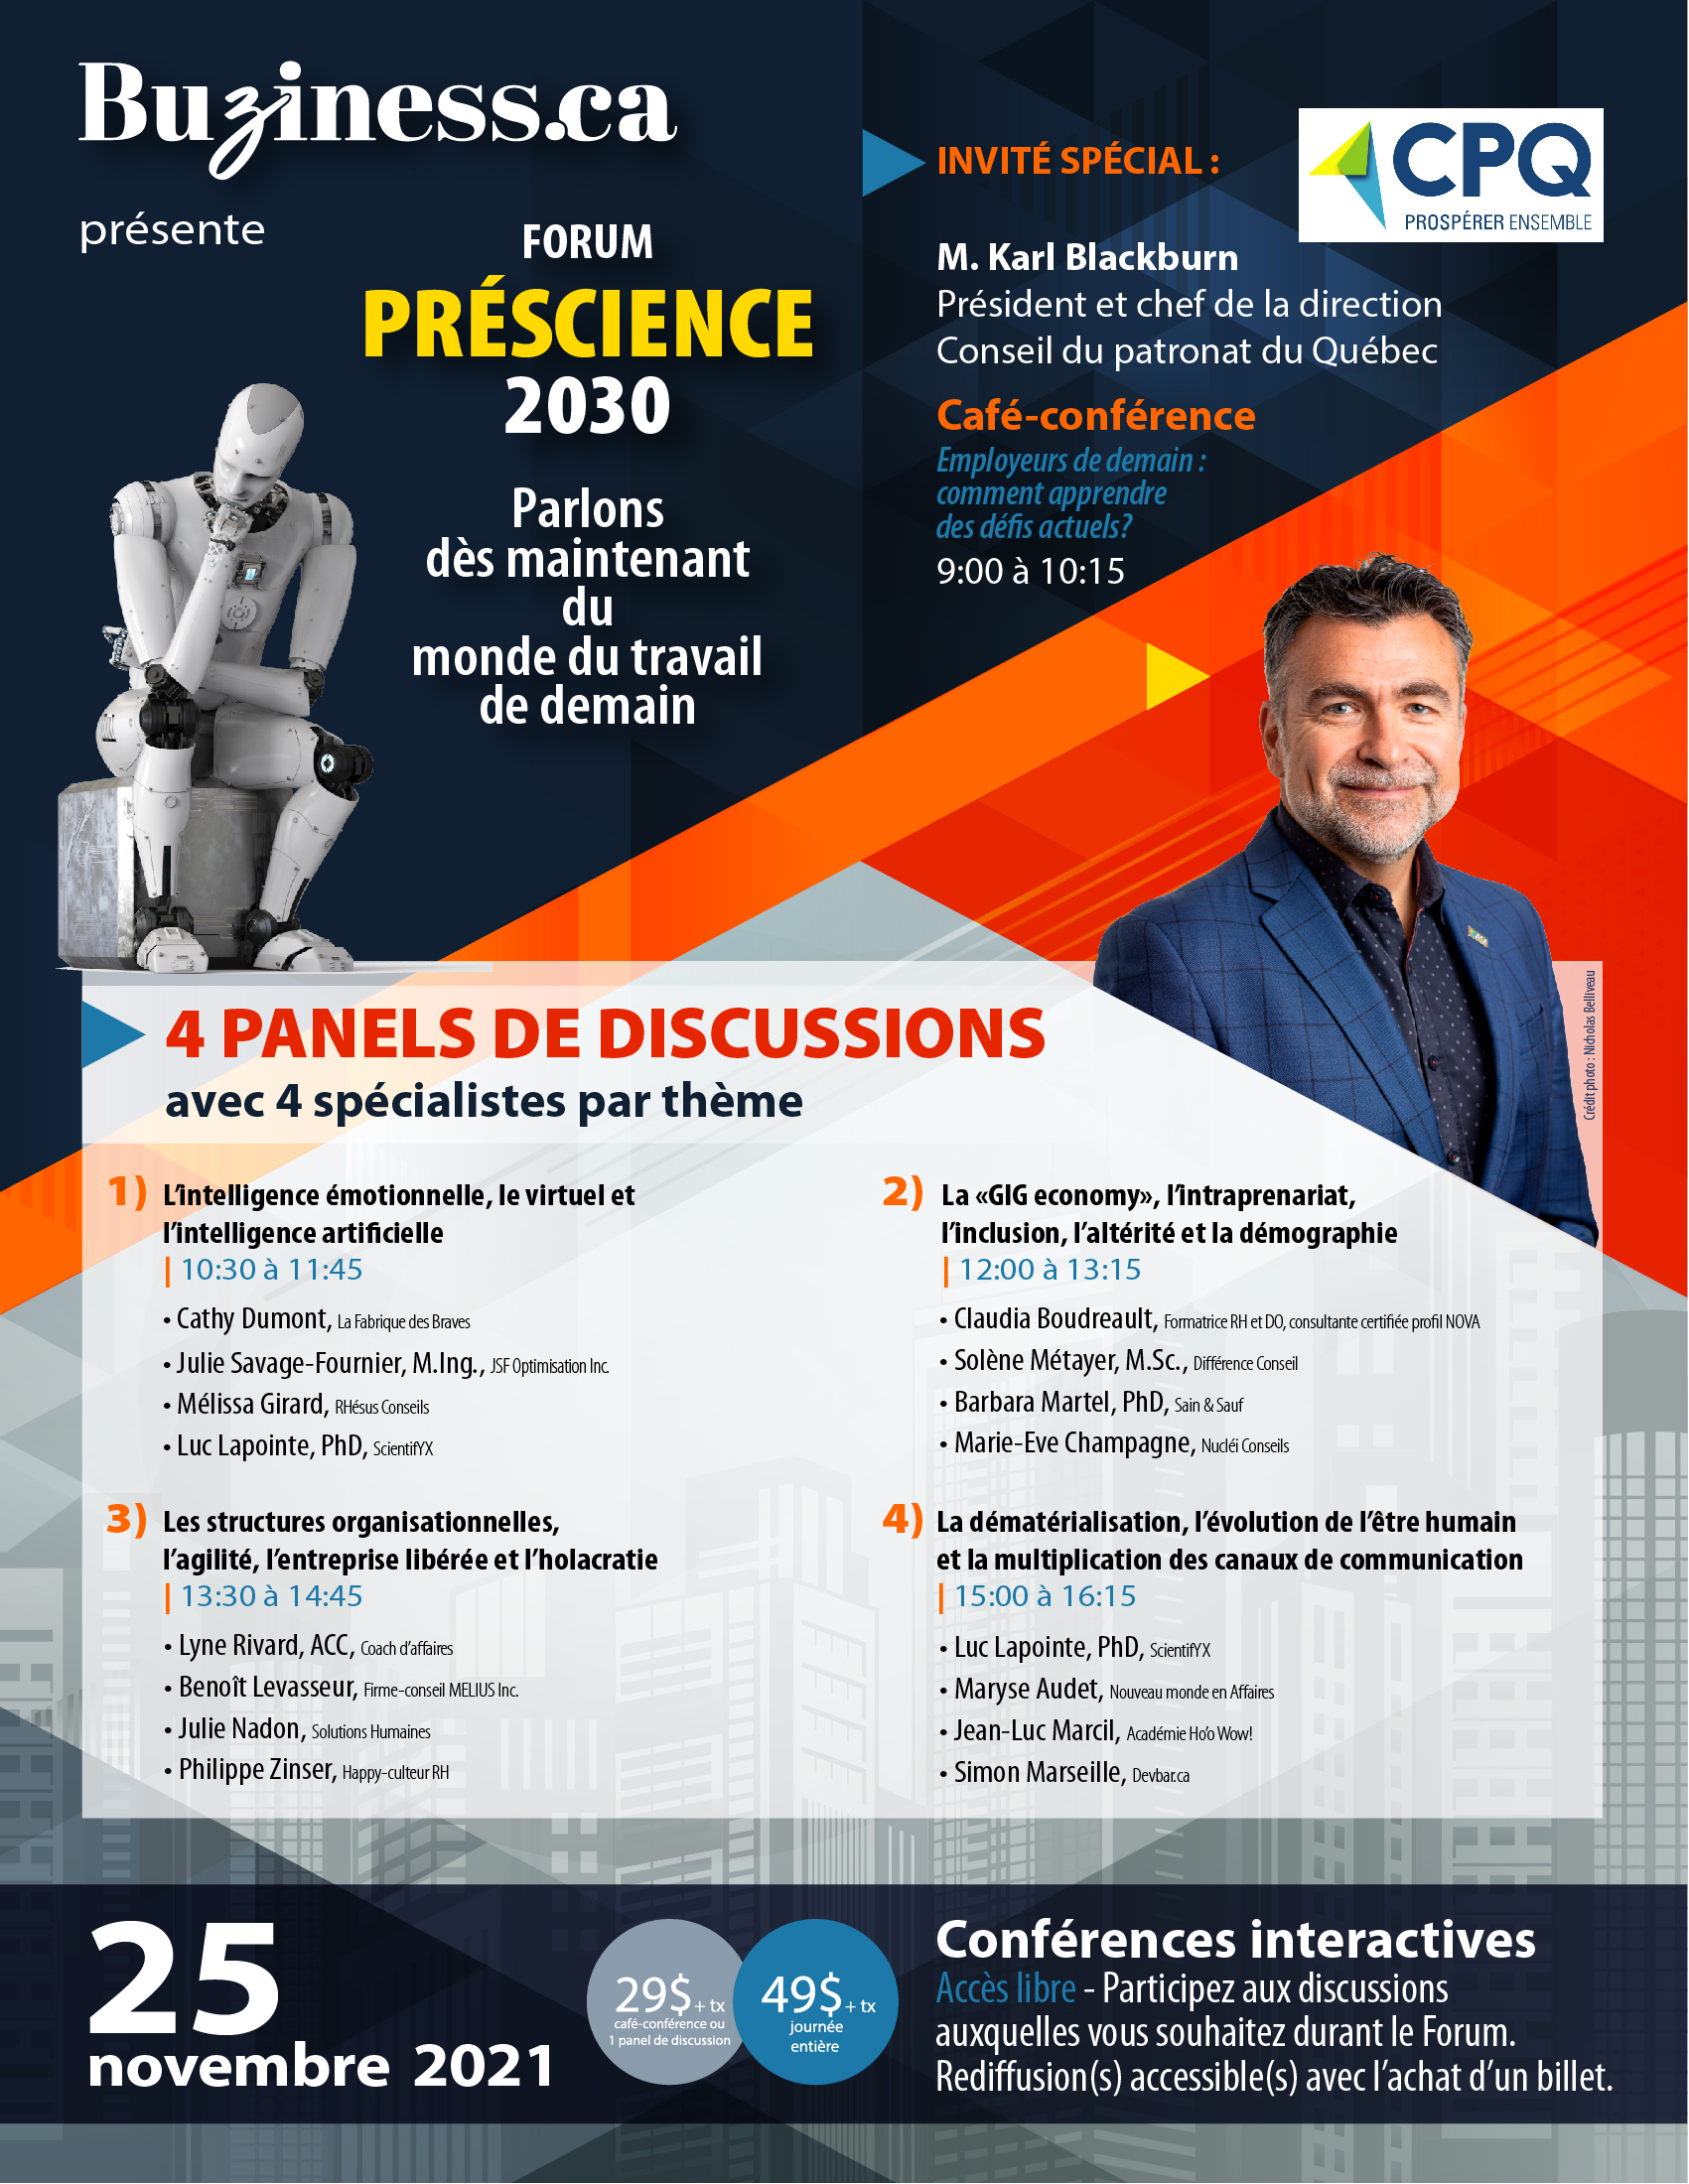 Buziness.ca présente le Forum Préscience 2030